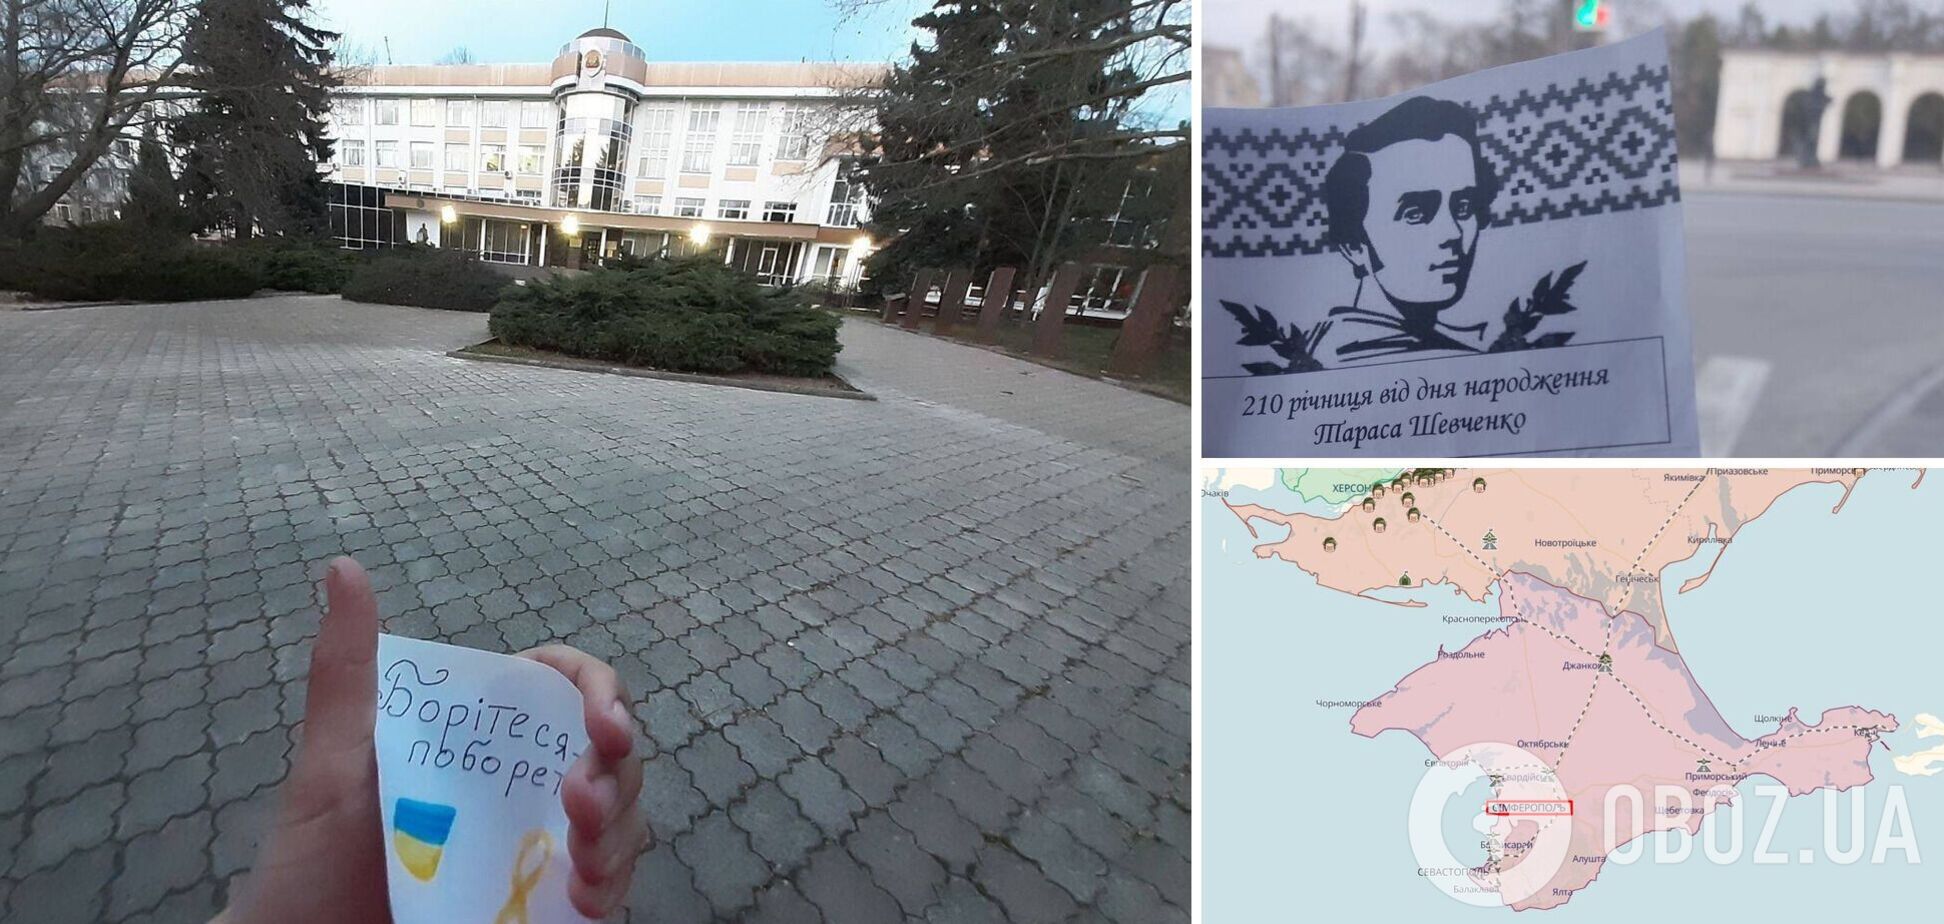 В Крыму патриоты смело отметили 210-й день рождения Тараса Шевченко. Фото